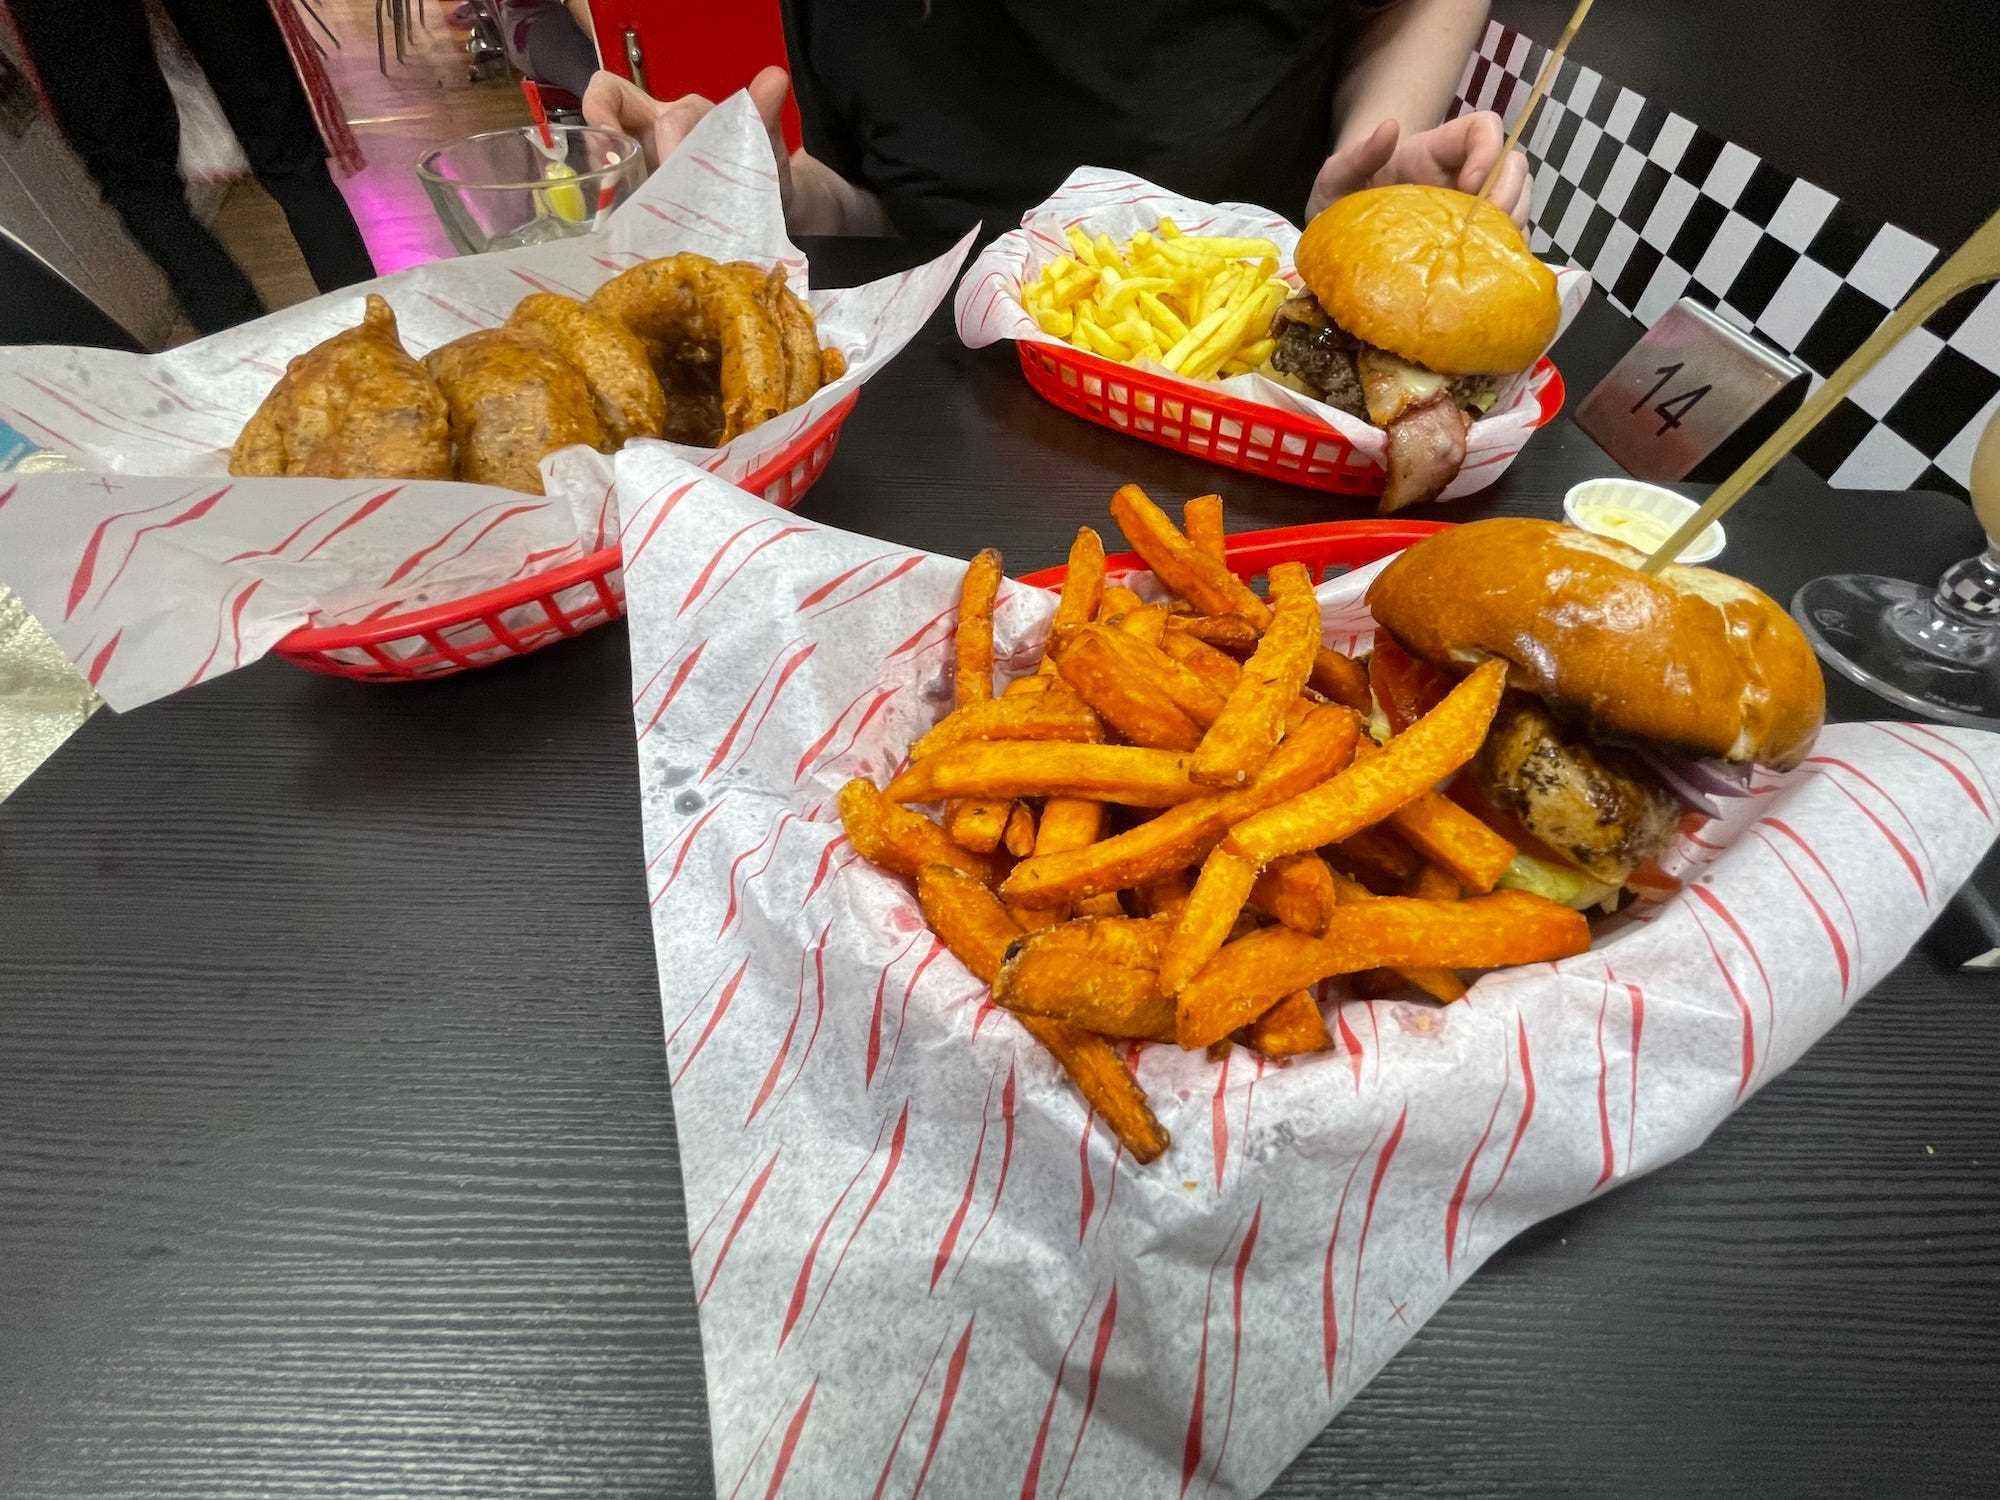 Zwei Burger und eine Portion Zwiebelringe bei Karen's Diner, serviert in Plastikschalen